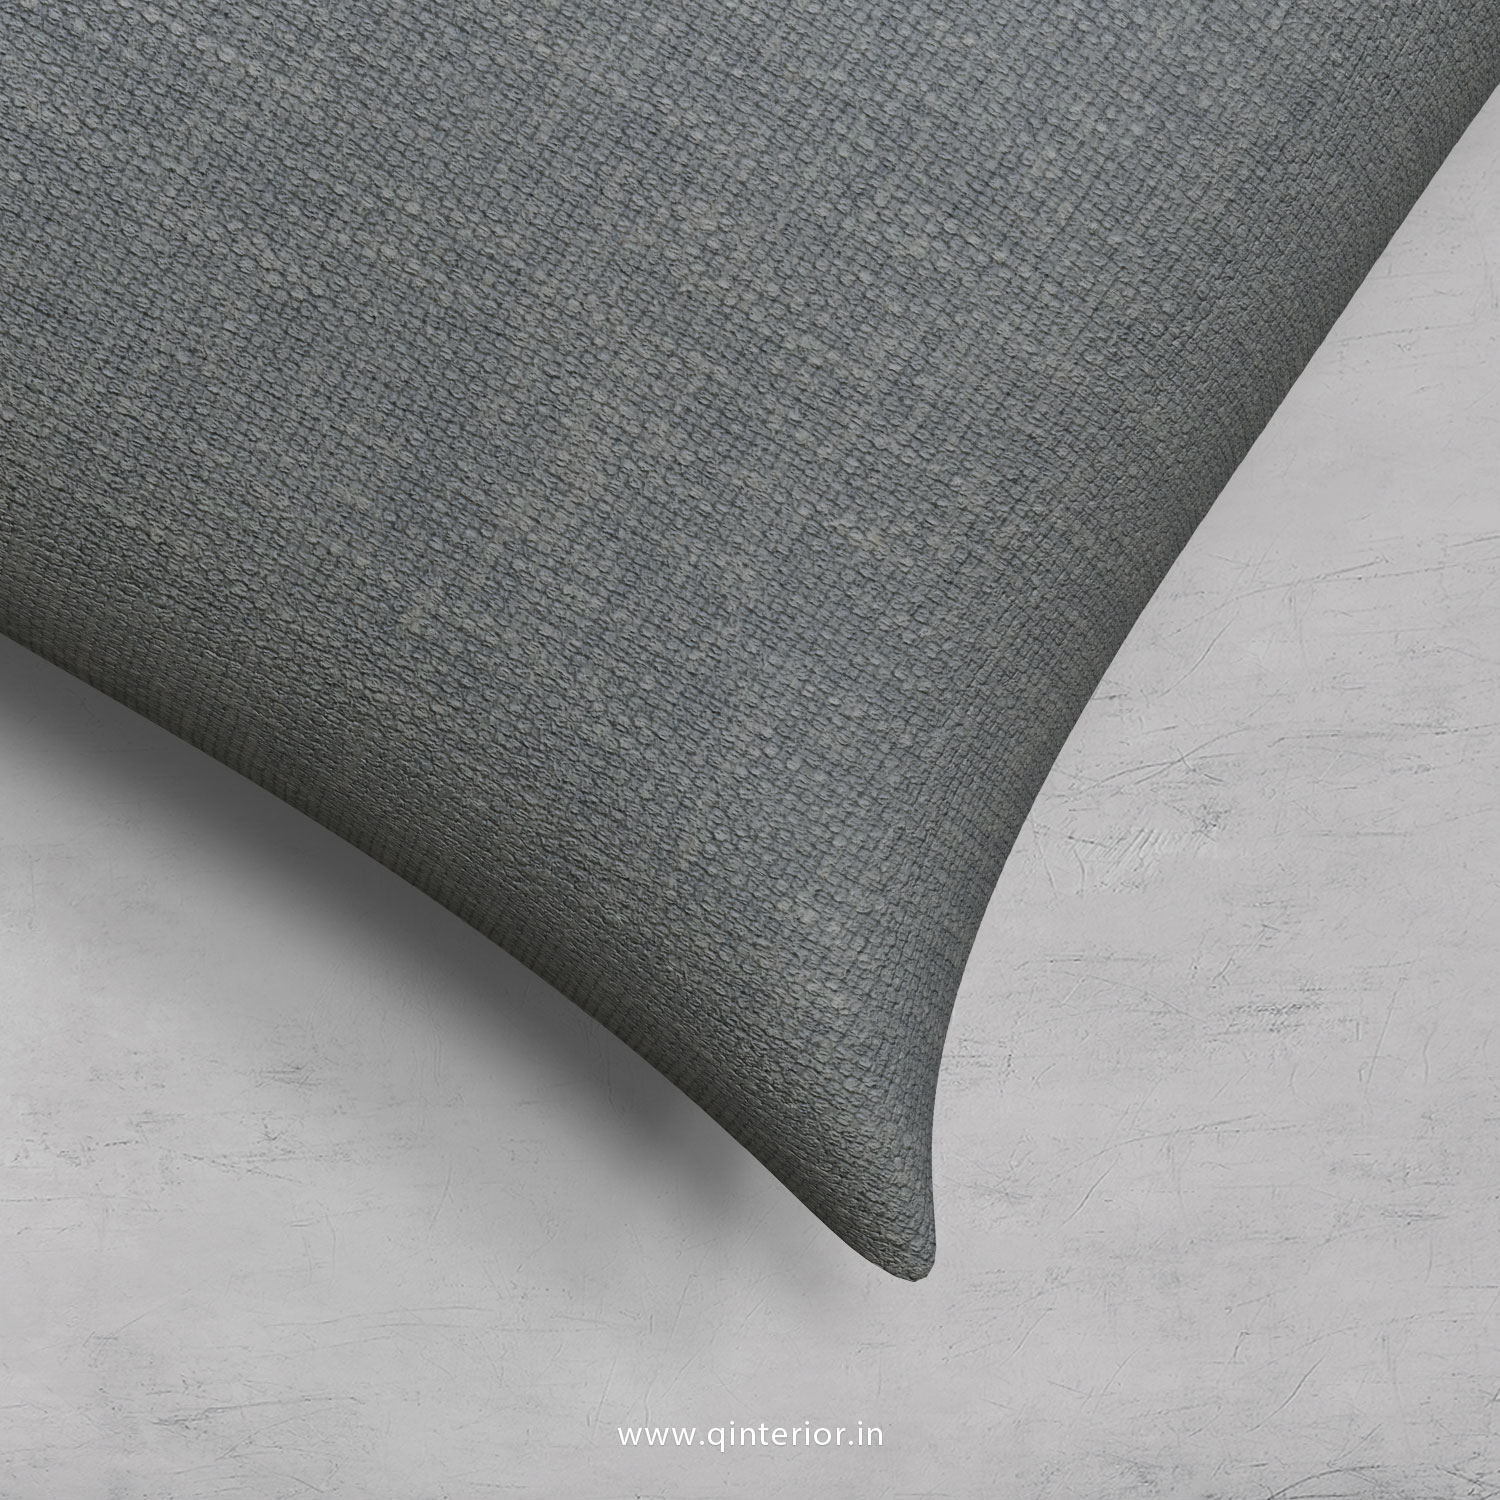 Cushion With Cushion Cover in Cotton Plain- CUS001 CP13